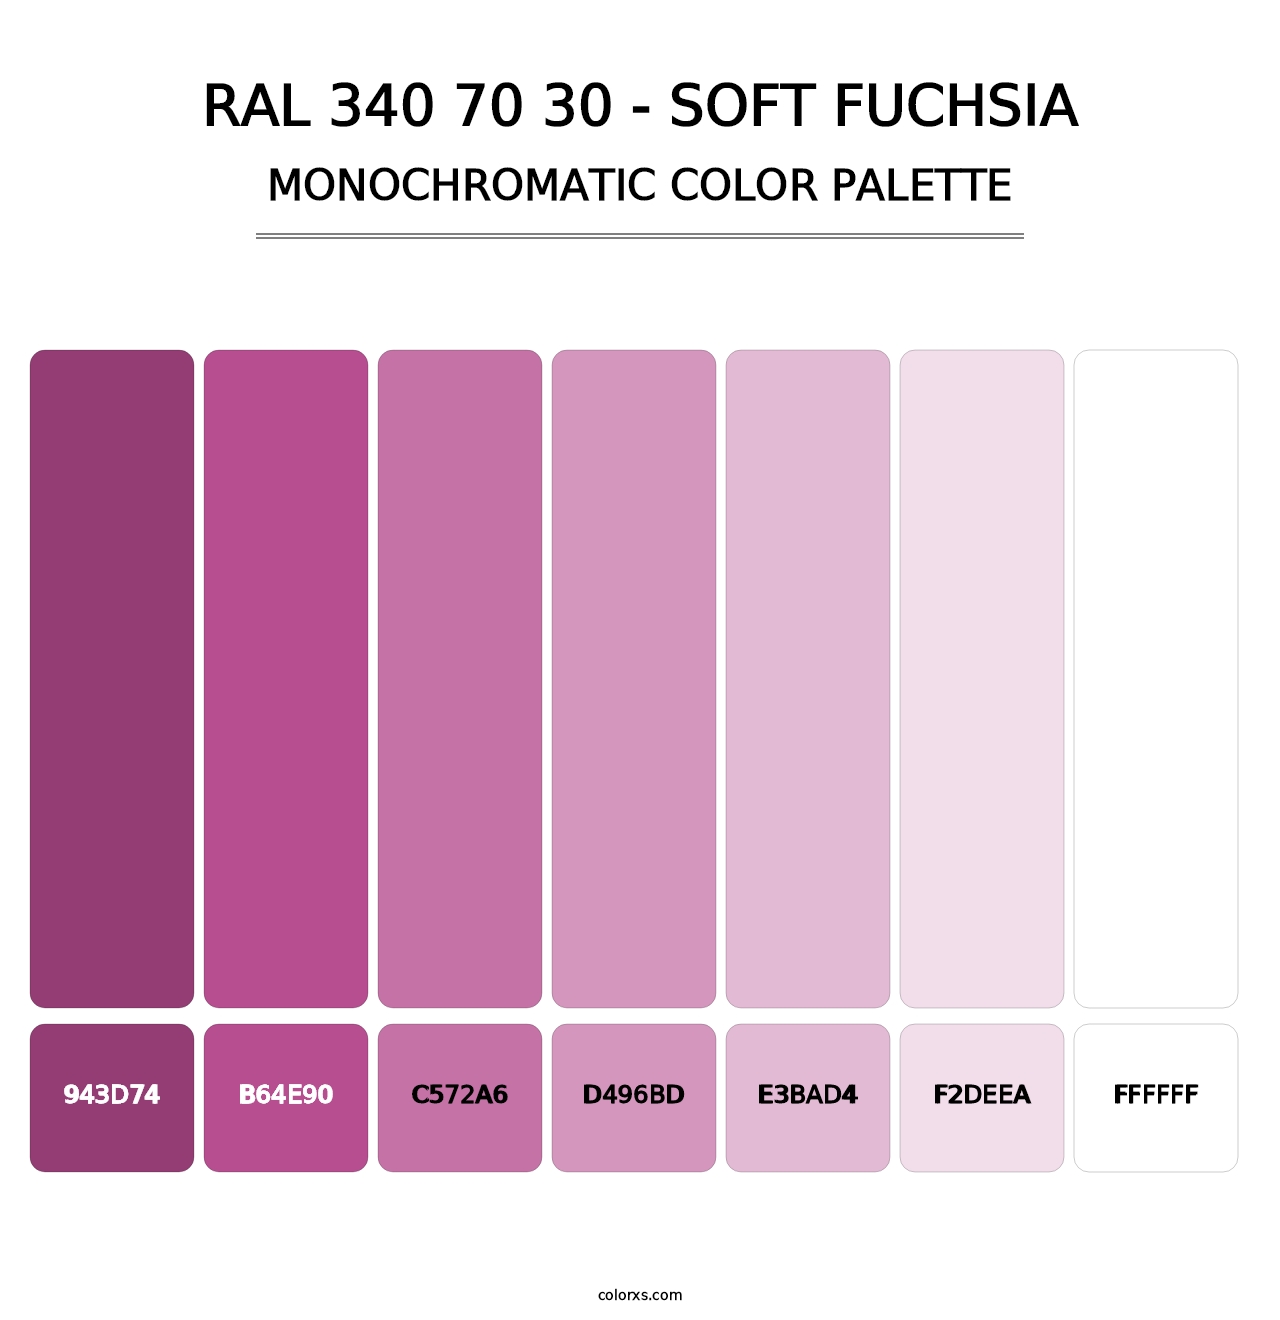 RAL 340 70 30 - Soft Fuchsia - Monochromatic Color Palette